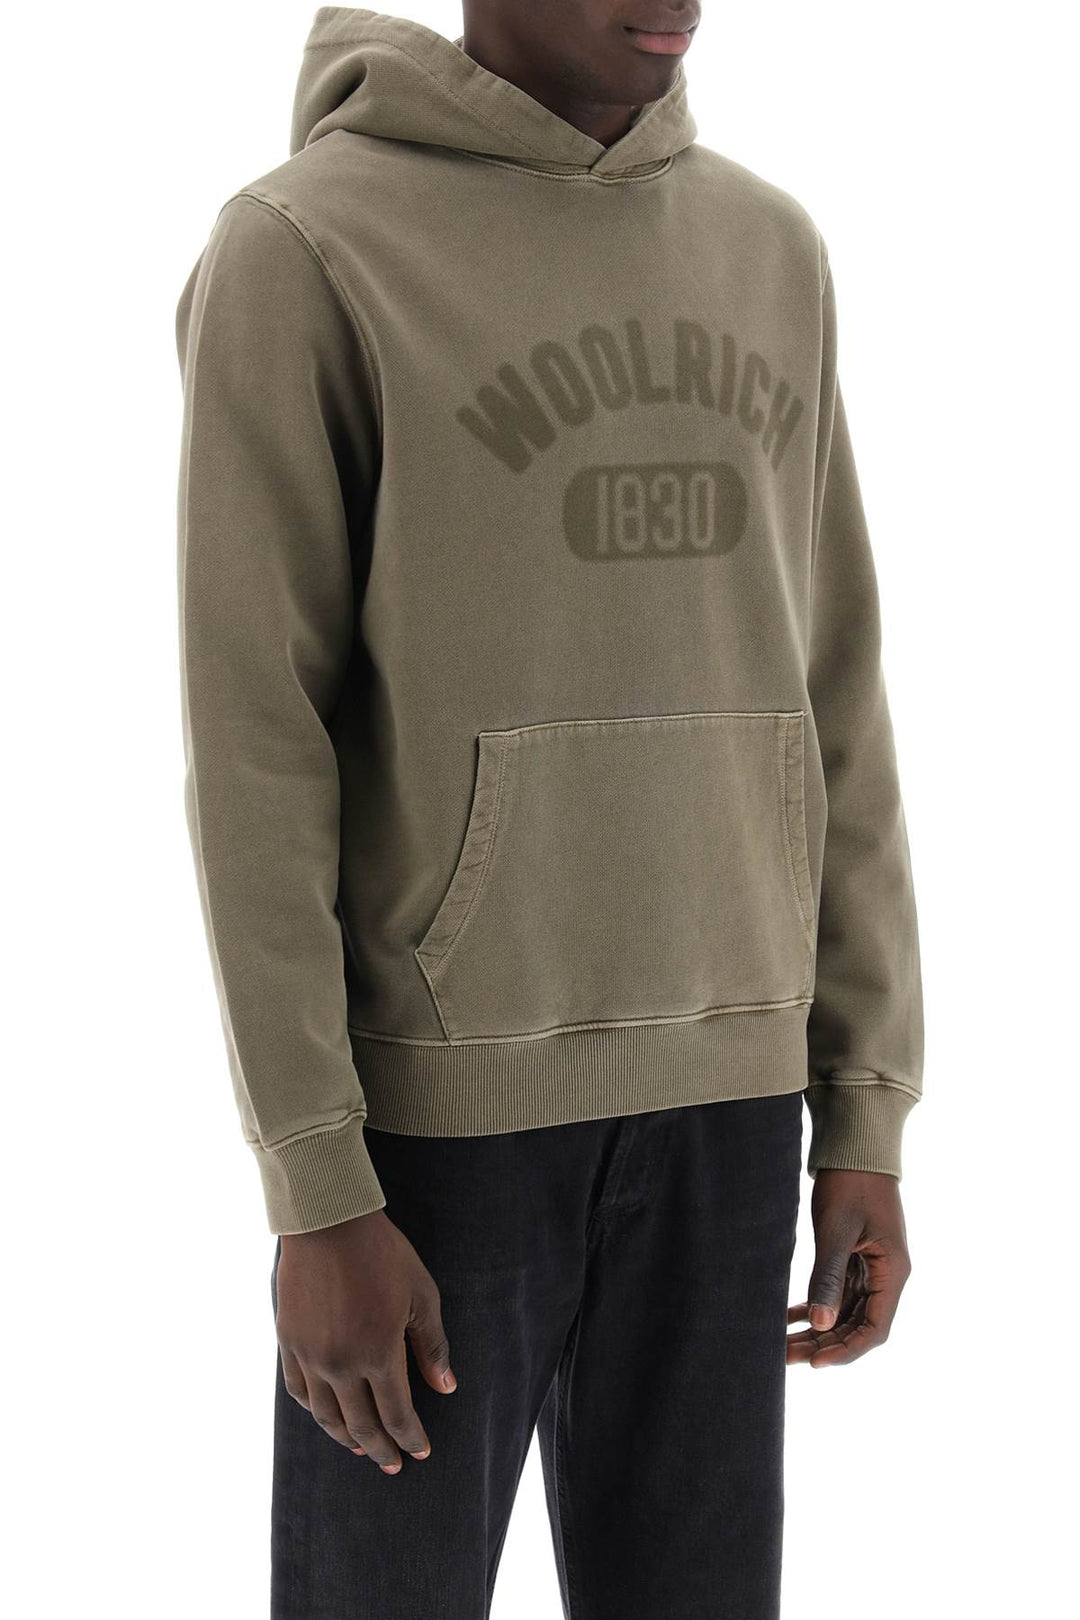 Woolrich Vintage Look Hoodie With Logo Print And   Khaki